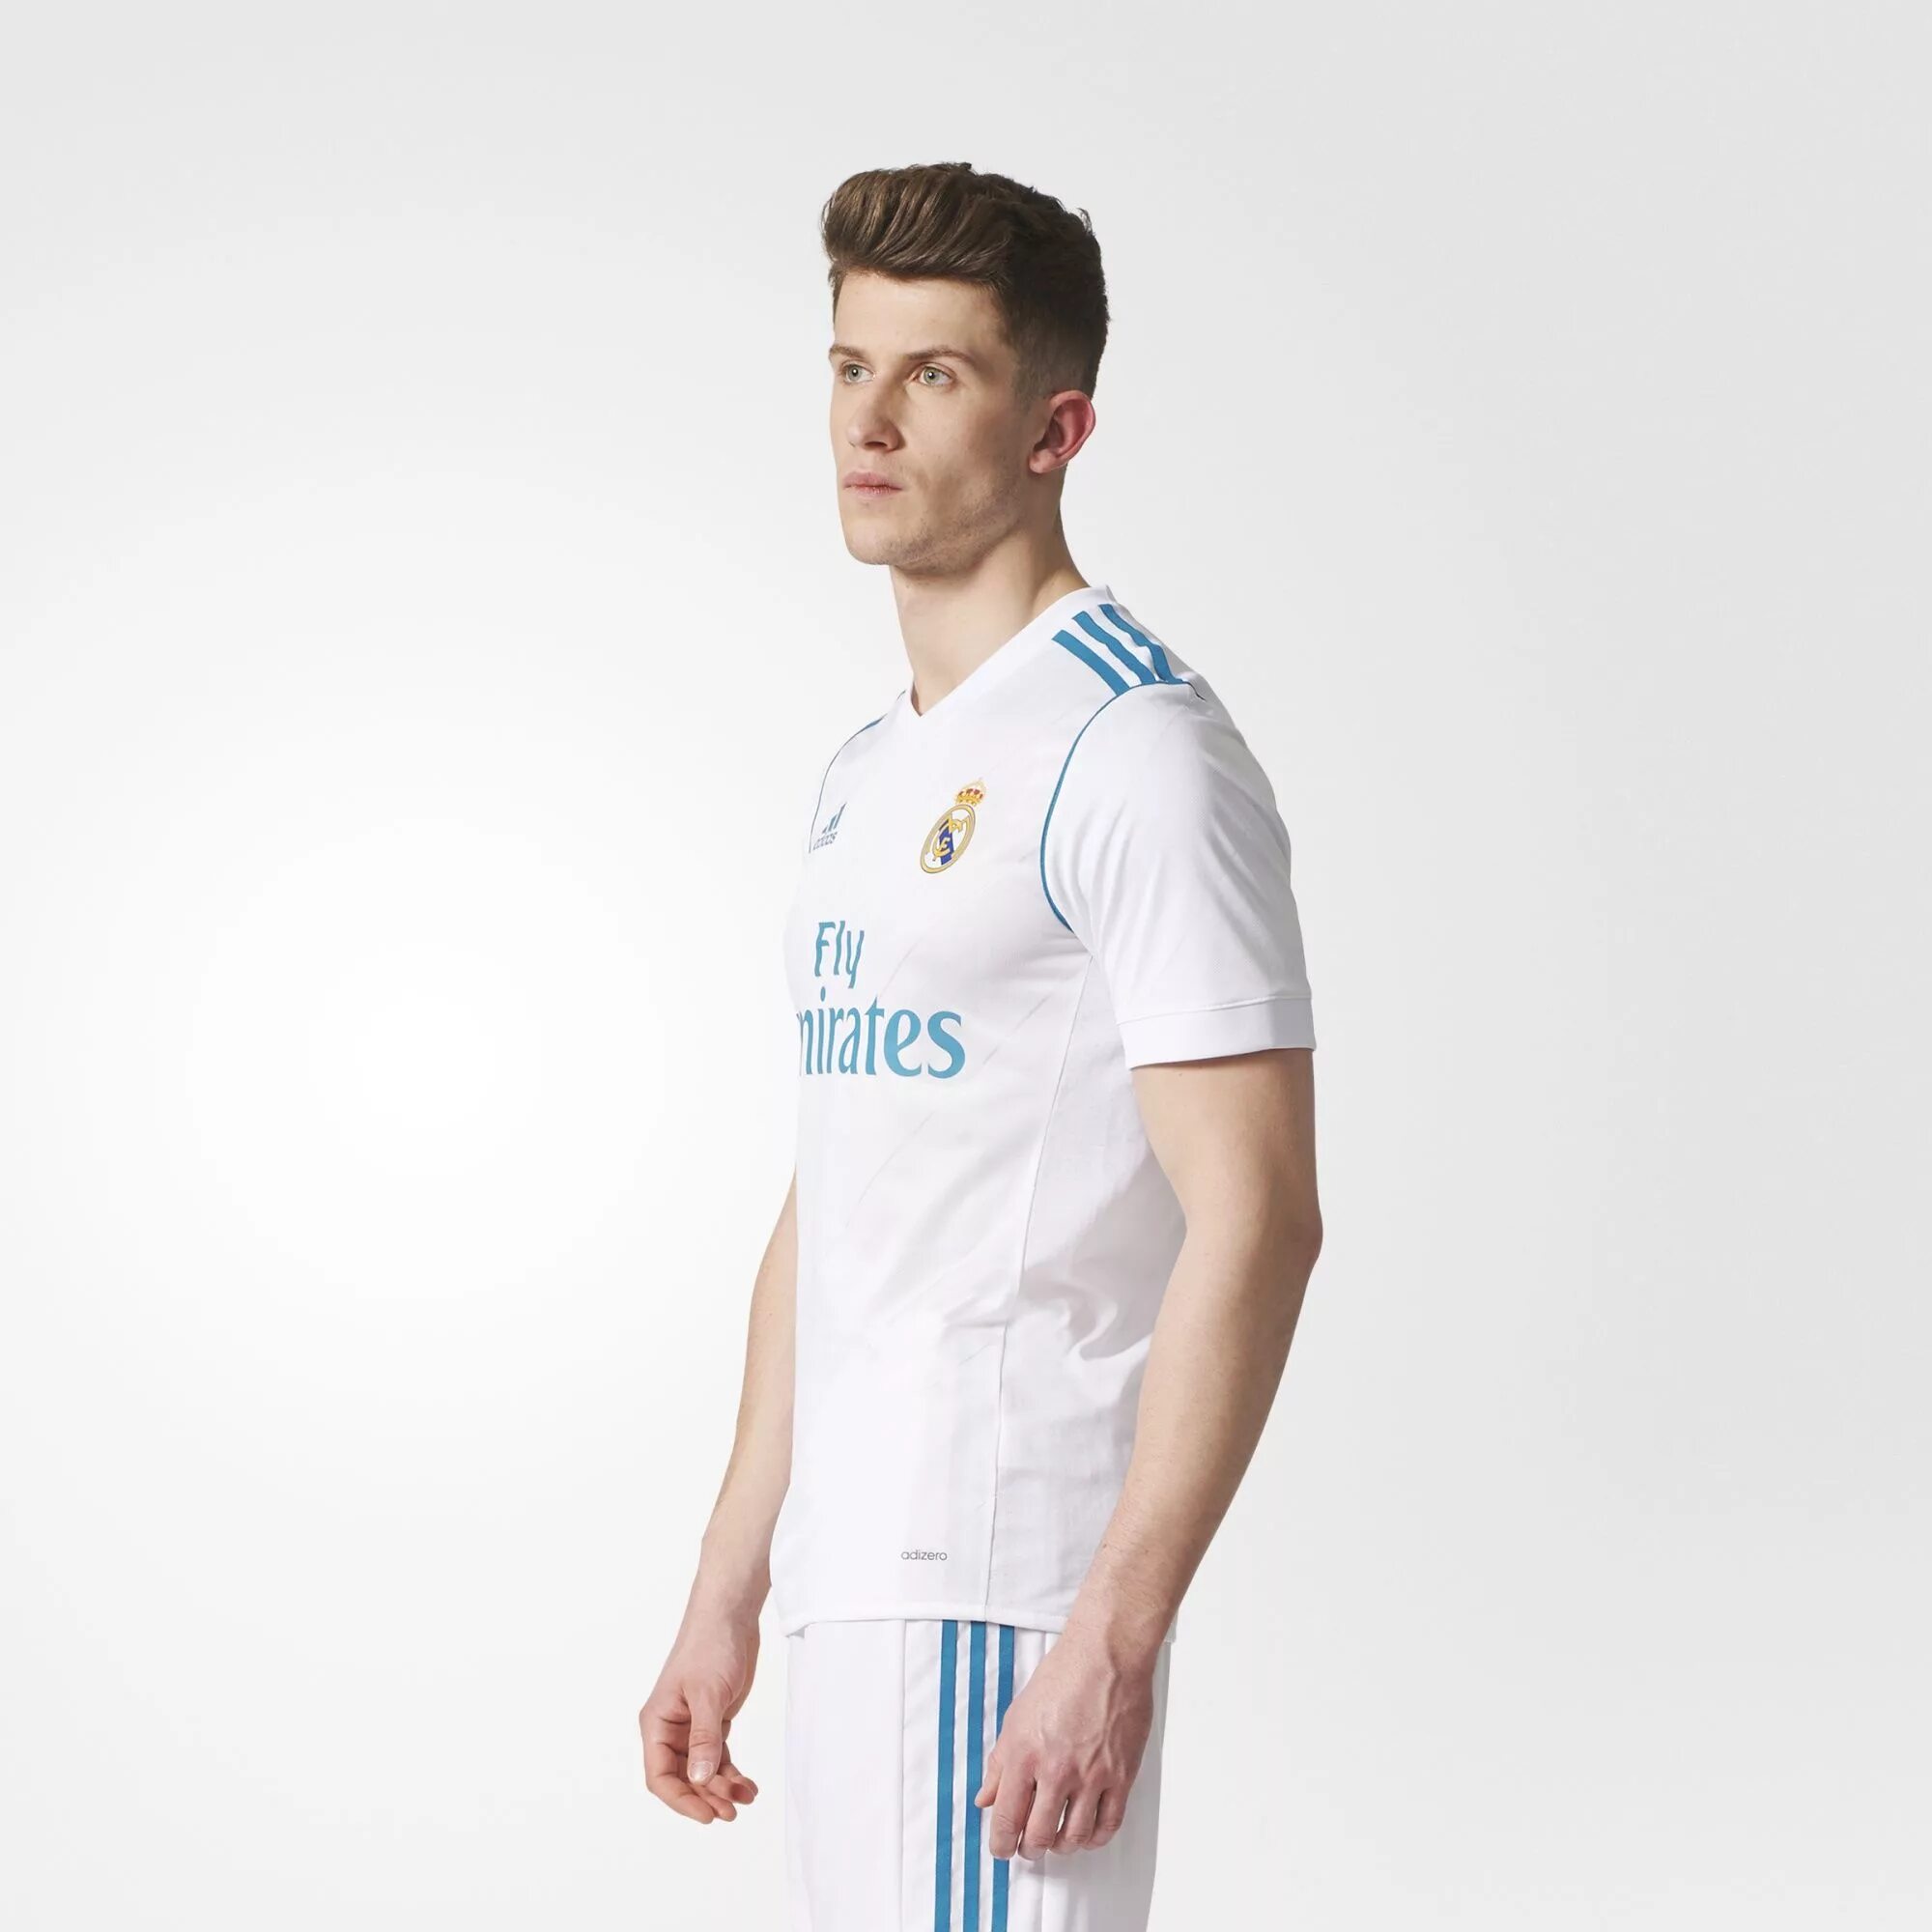 Real Madrid Kits 17 18. Real Madrid away Kit 2017. Real Madrid Kits 2017 2018. Real Madrid 2017 Kit.